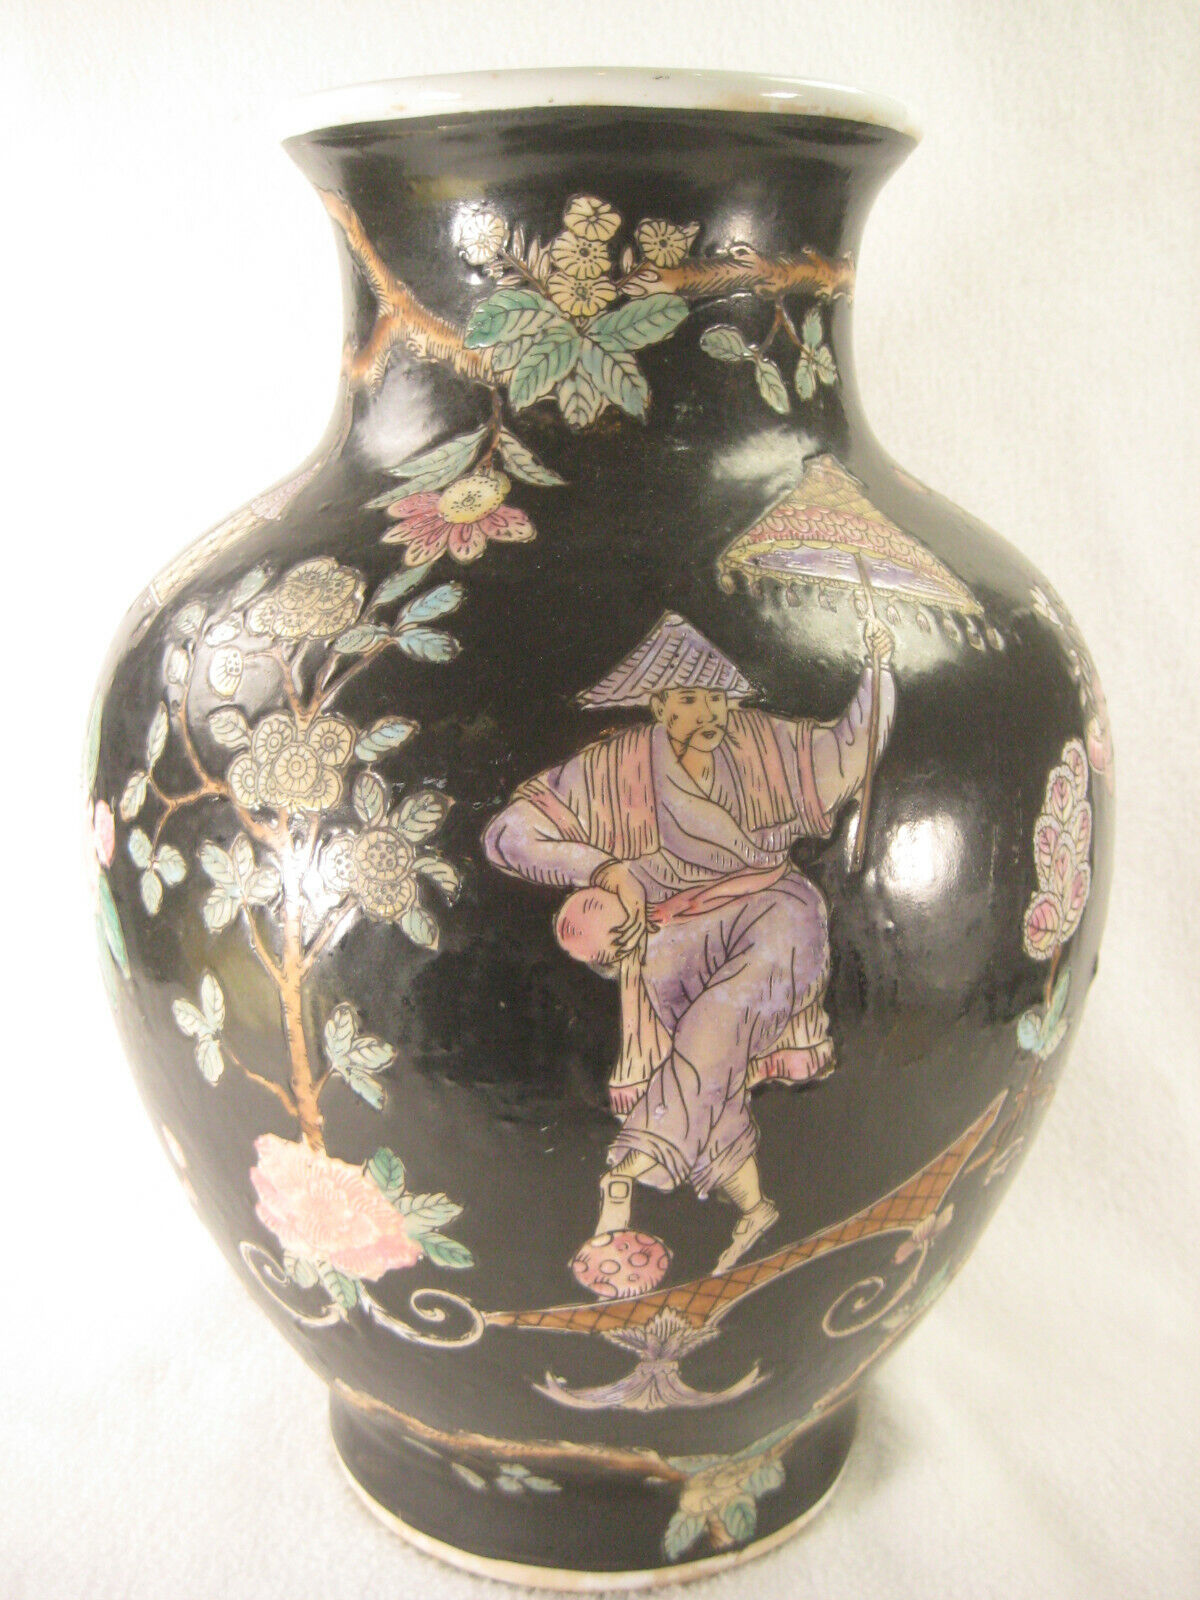 Décorations chinoises, vases de fleurs et oiseaux. - NYPL Digital  Collections